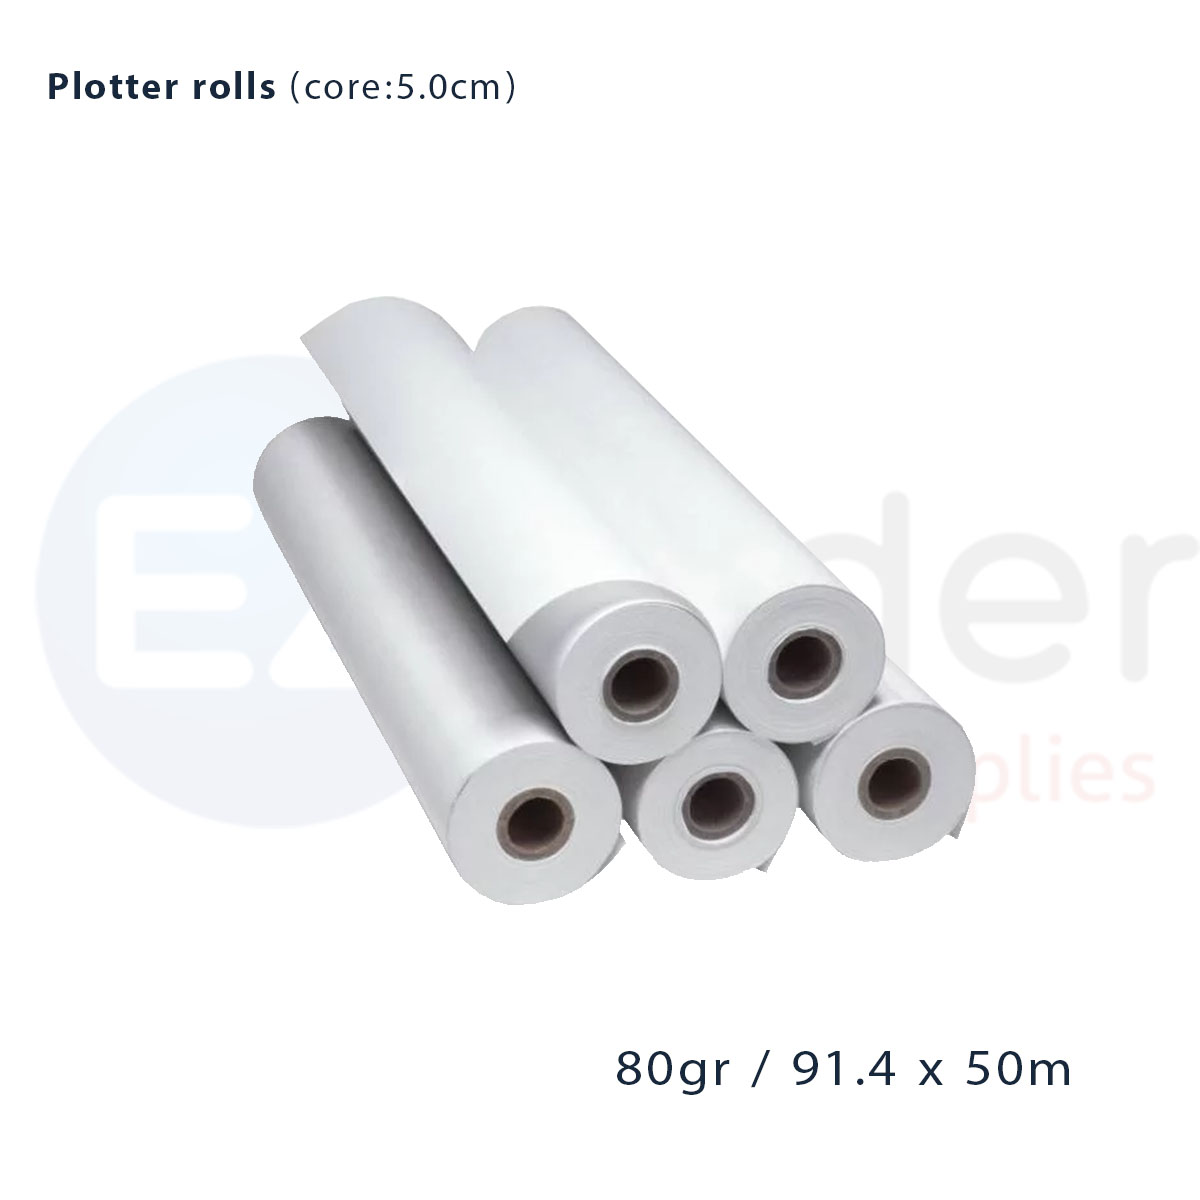 Plotter roll (91.4cmx50m),A0+,80gr,KANGAS